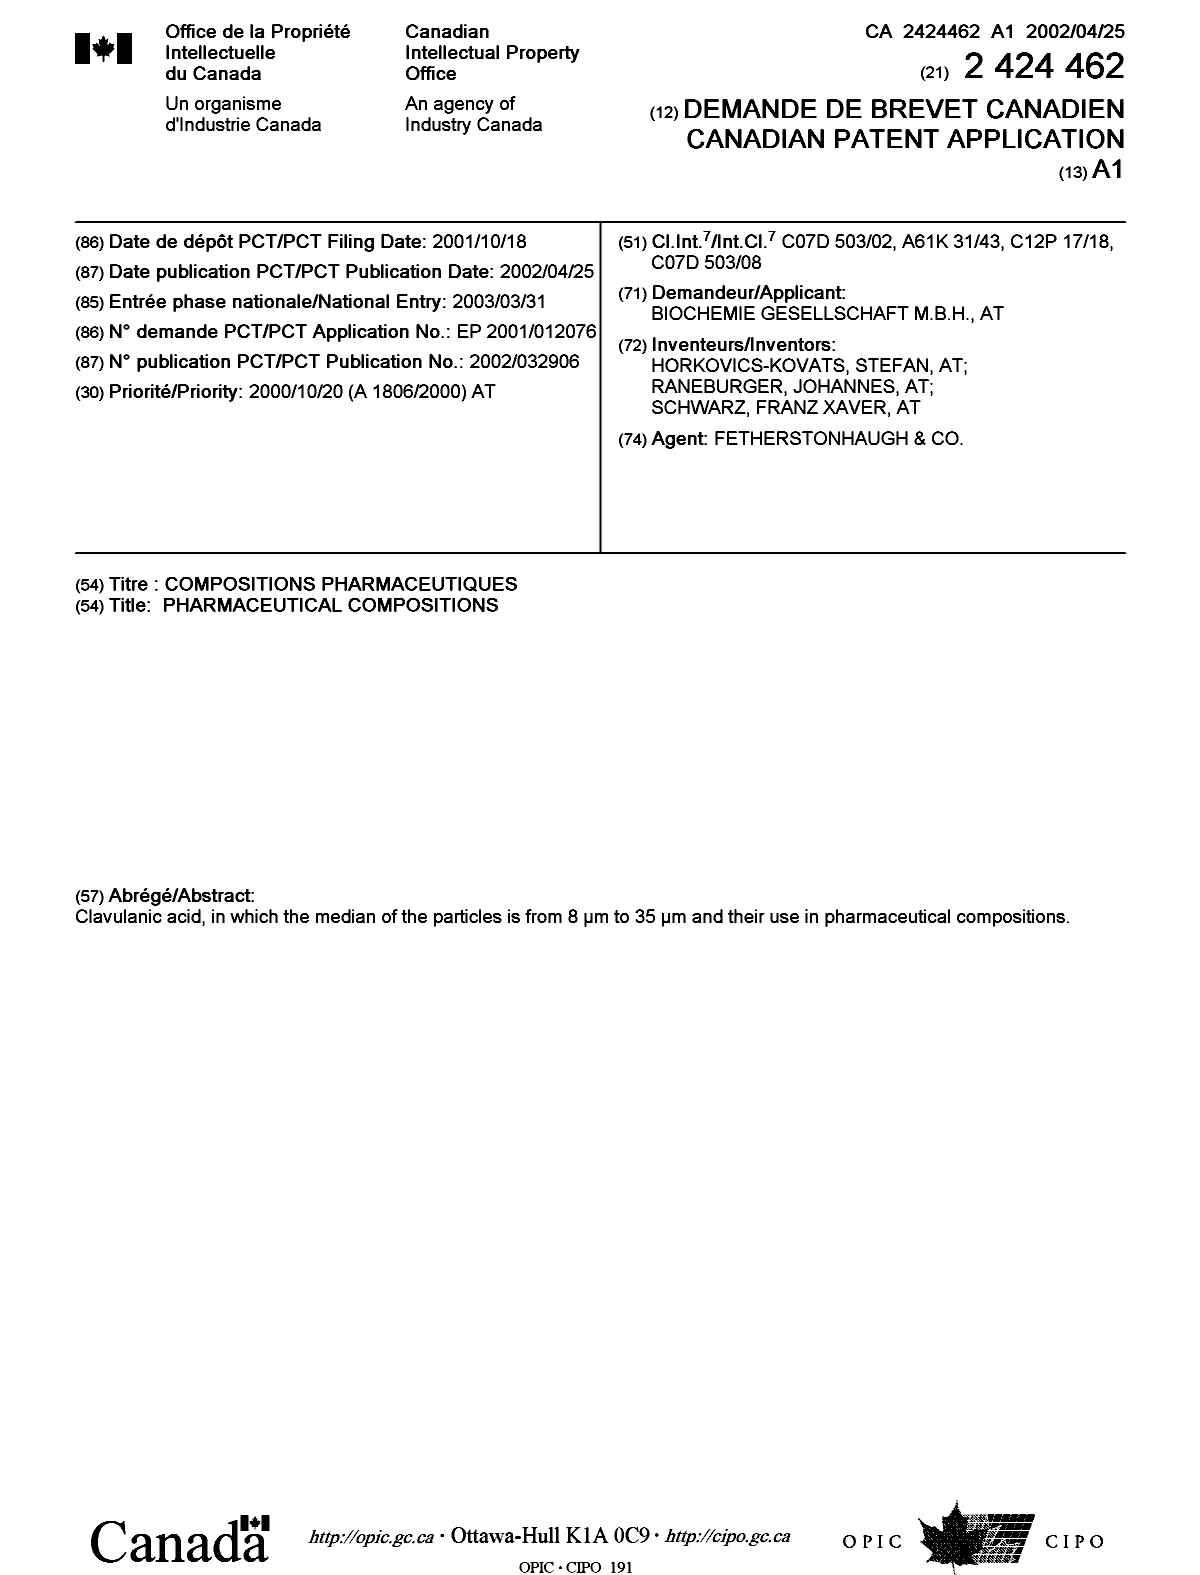 Document de brevet canadien 2424462. Page couverture 20030605. Image 1 de 1